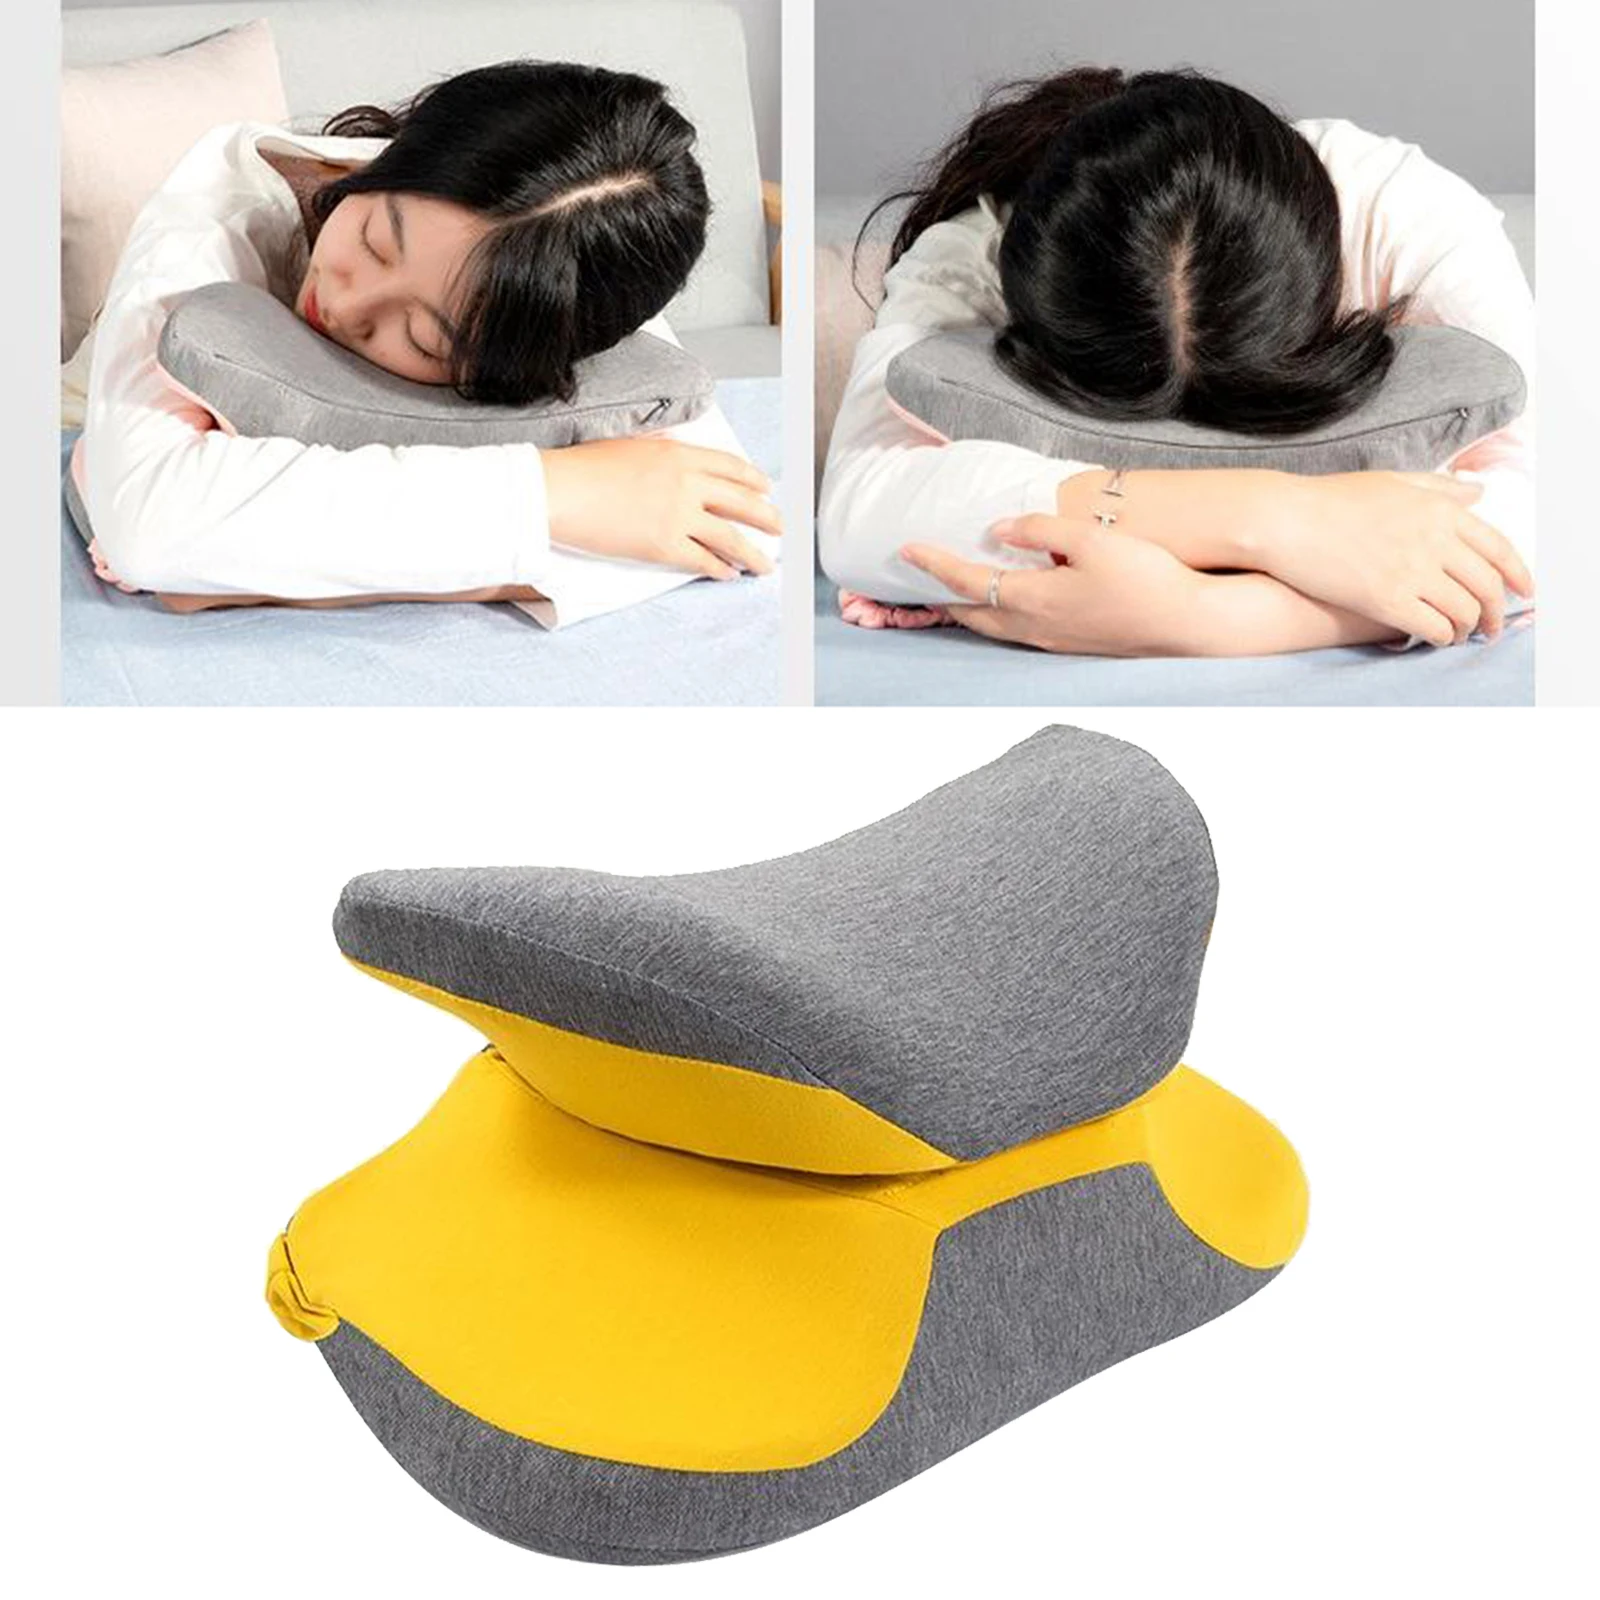 Travel Pillow Memory Foam Neck Pillow Support Pillow Portable Compact & Lightweight Nap Pillow for Office Sleeping Rest Cushion